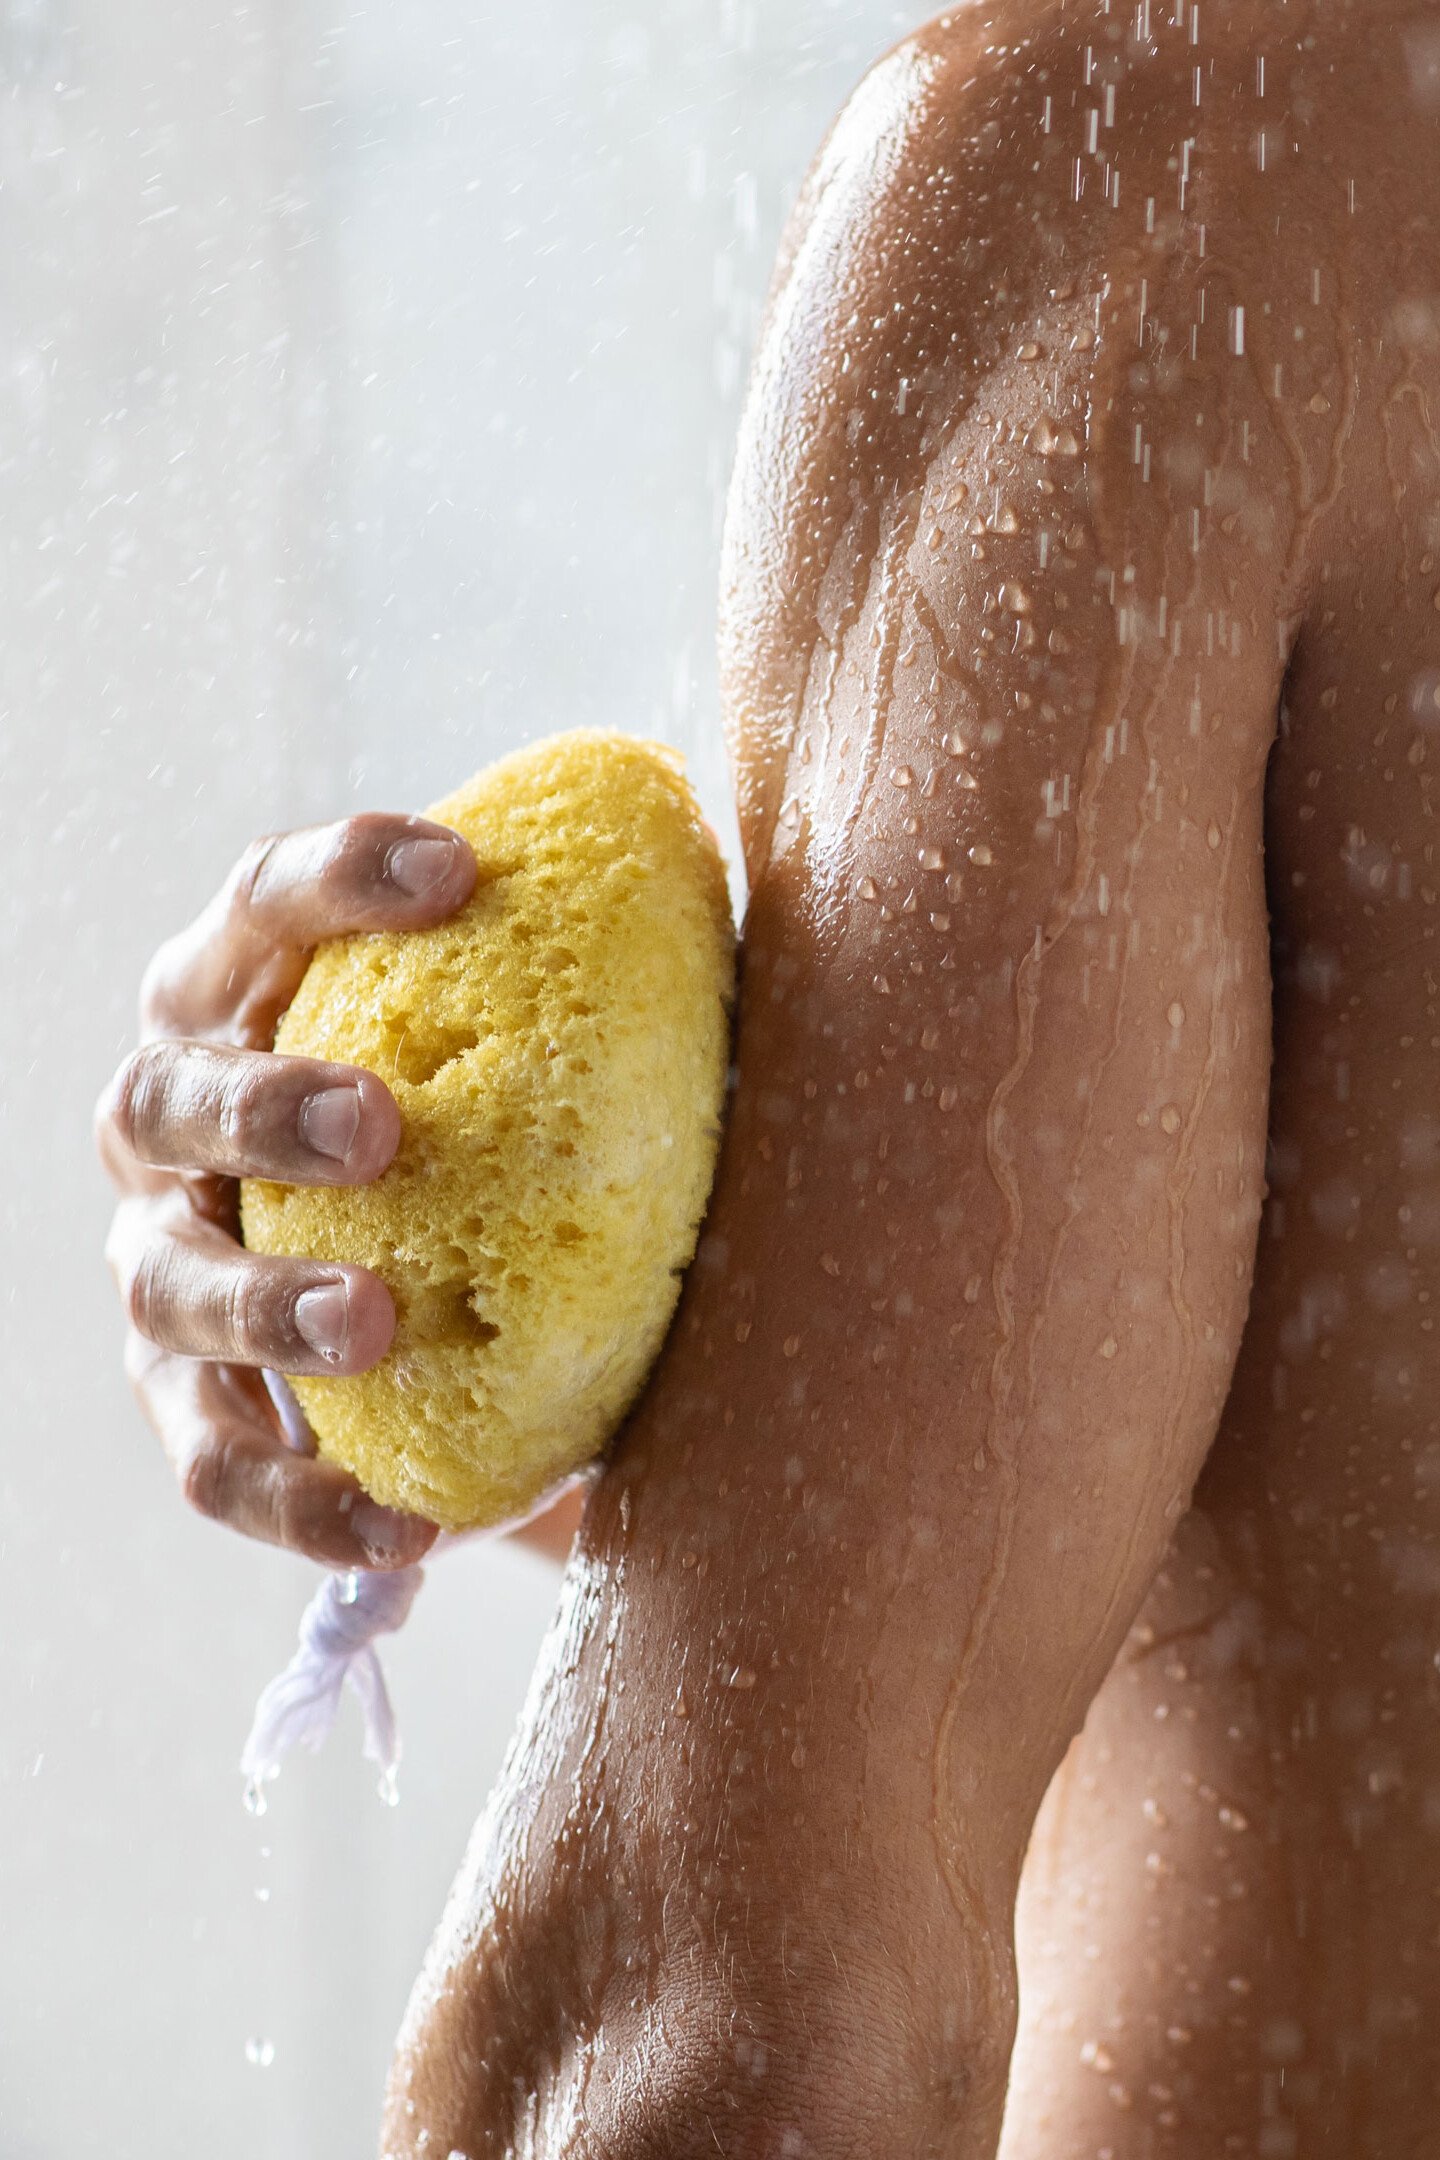 Ein Mann seift sich beim Duschen den Oberarm mit einem Schwamm ein. Das Bild illustriert einen Bereich der täglichen Hautpflege.